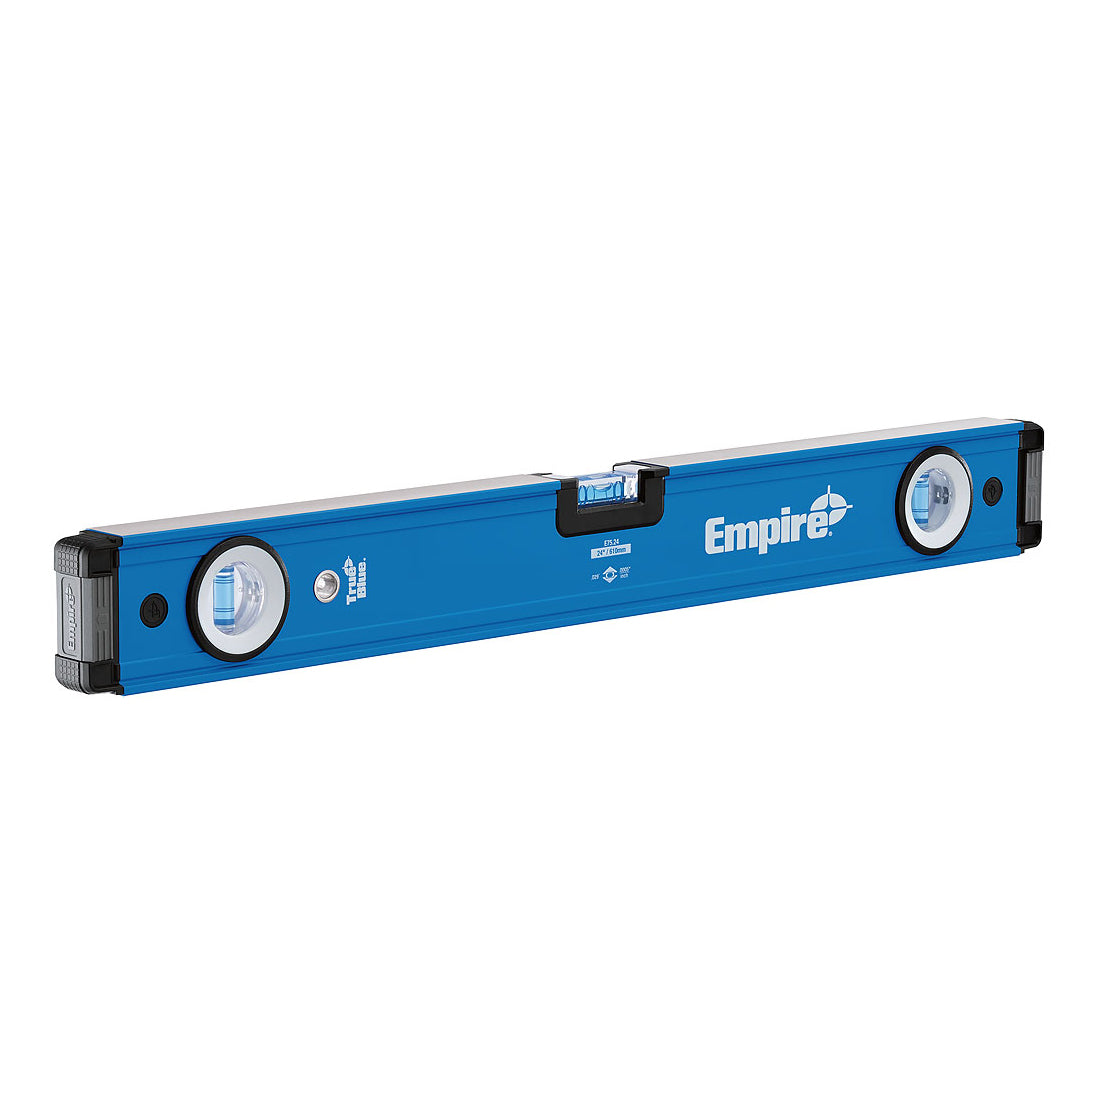 Empire e75 Series True Blue Box Level - 24"